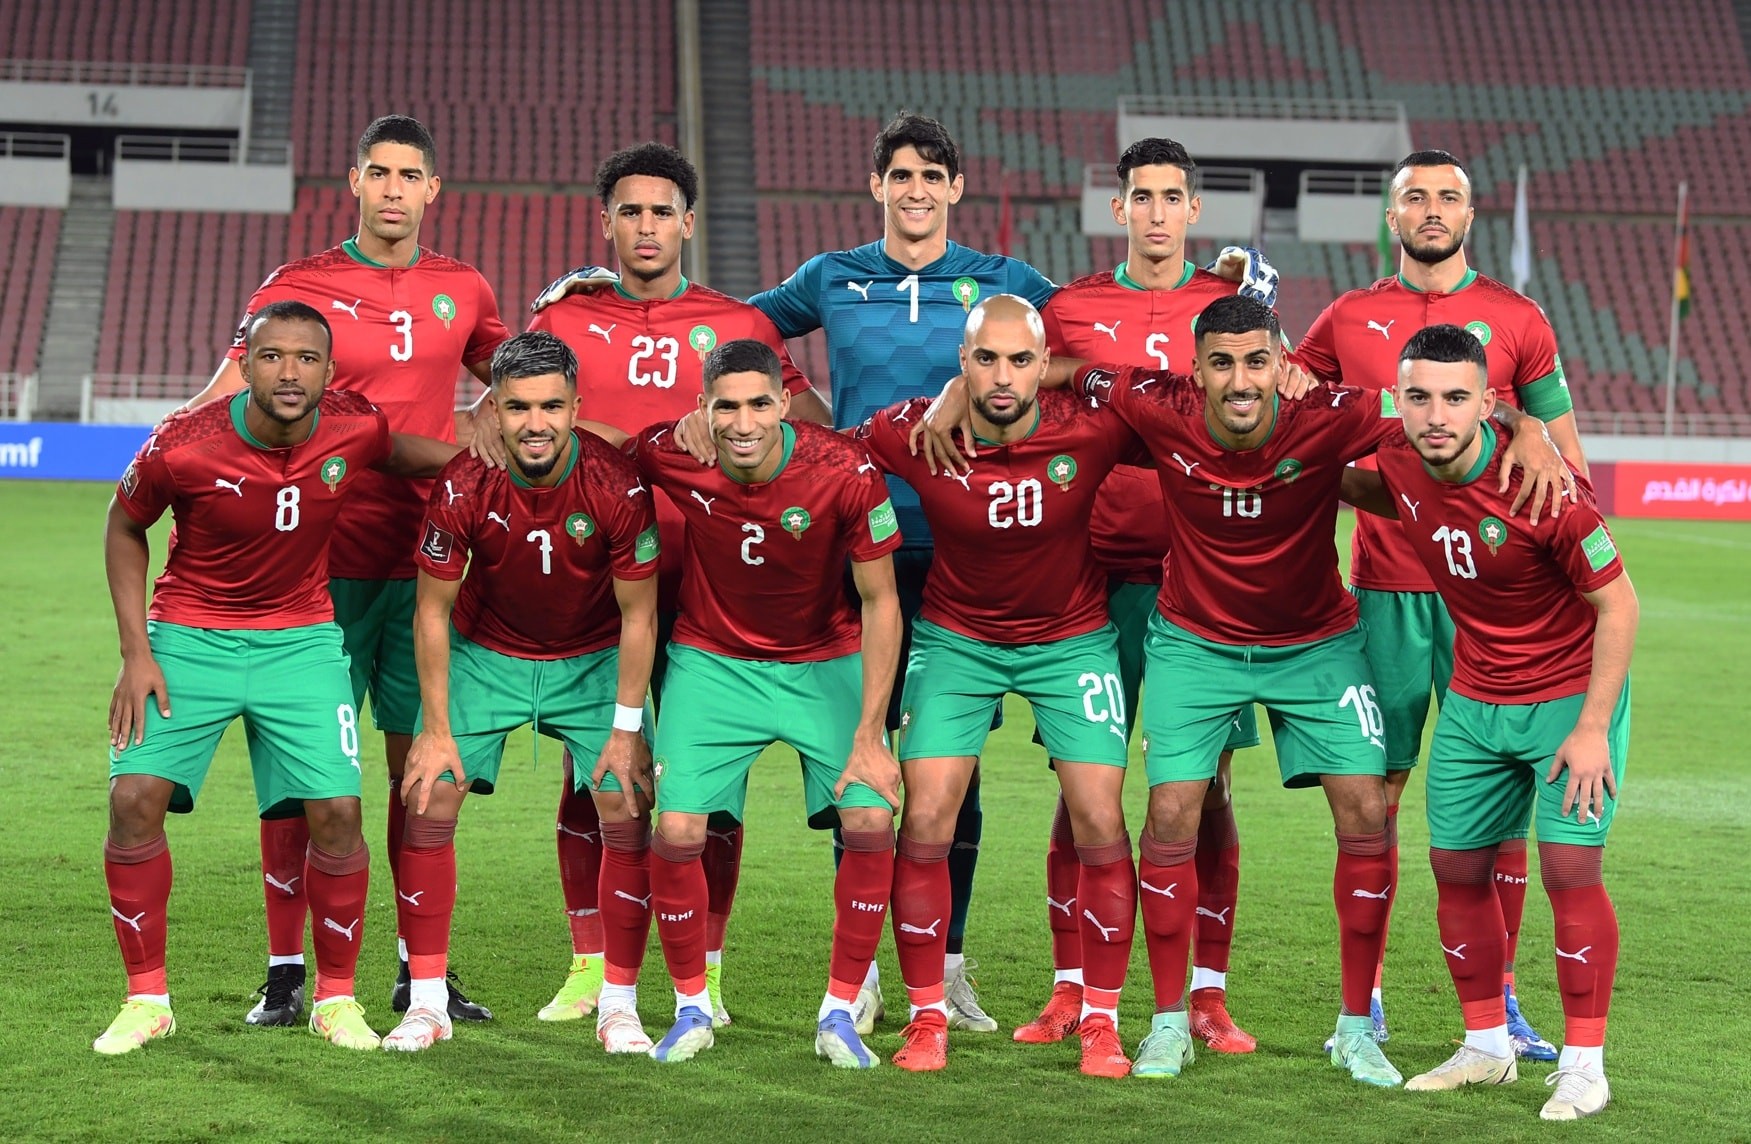  Bélgica rival de Marruecos en el Mundial desvela la lista de sus jugadores convocados